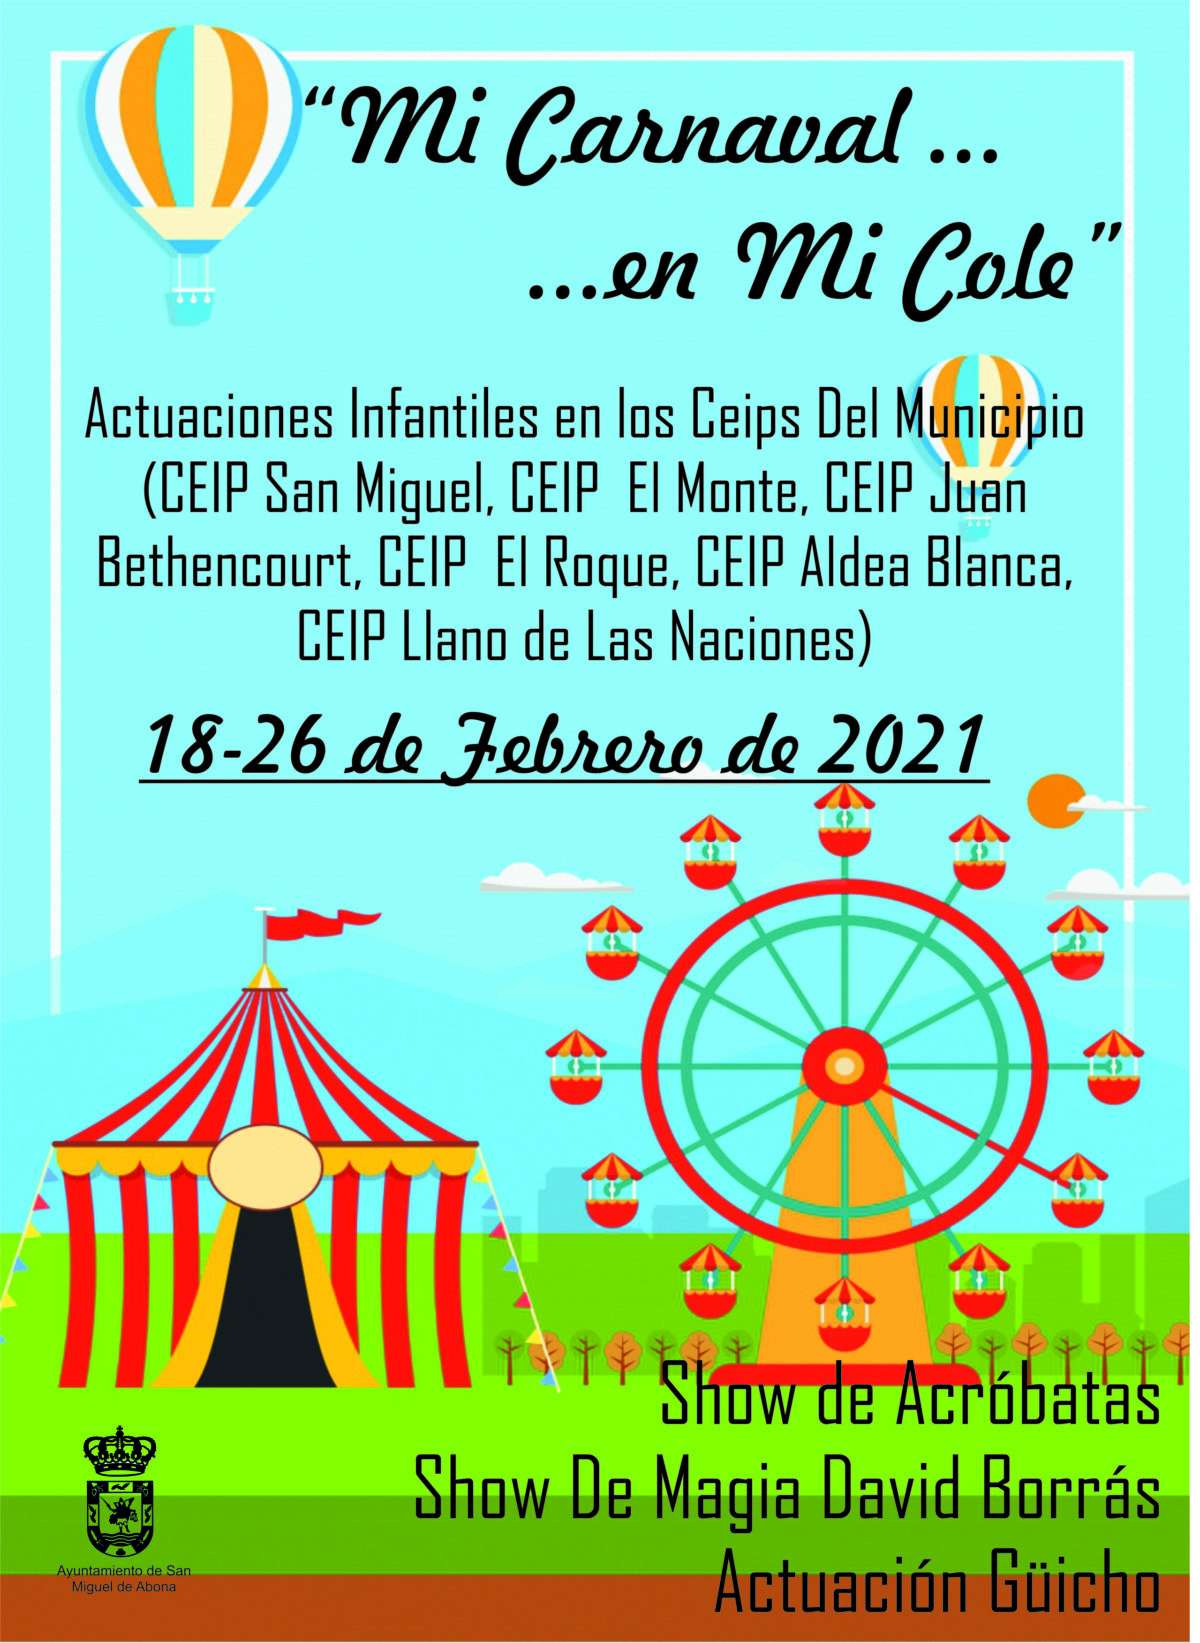 Los CEIP de San Miguel recibirán al Carnaval con una propuesta de espectáculos infantiles